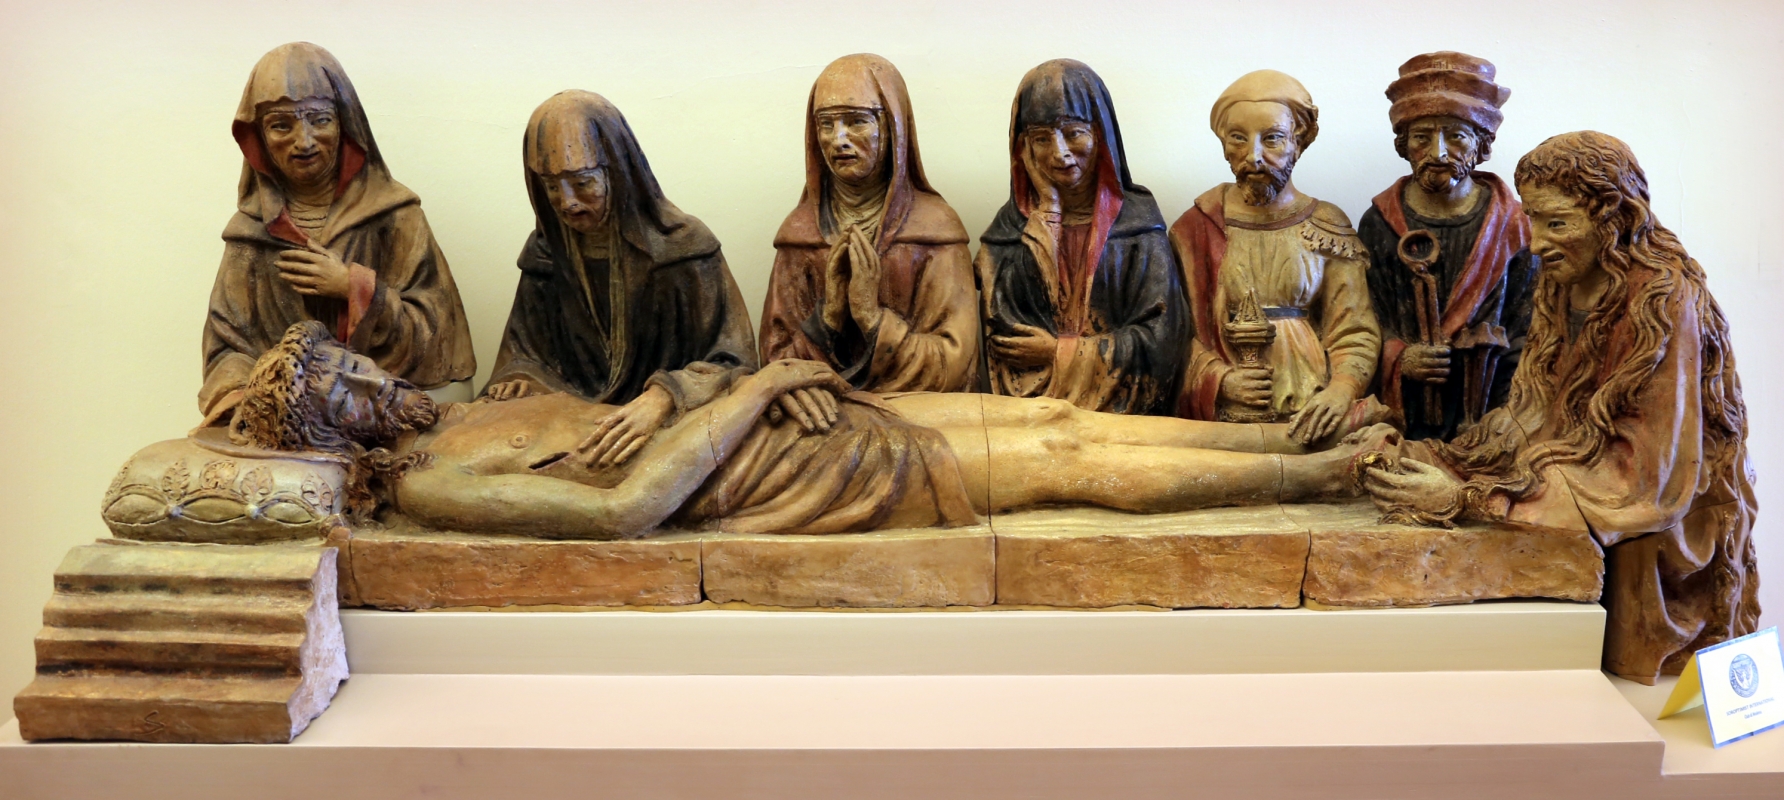 Michele da firenze, compianto sul cristo morto, 1443-48, 01 - Sailko